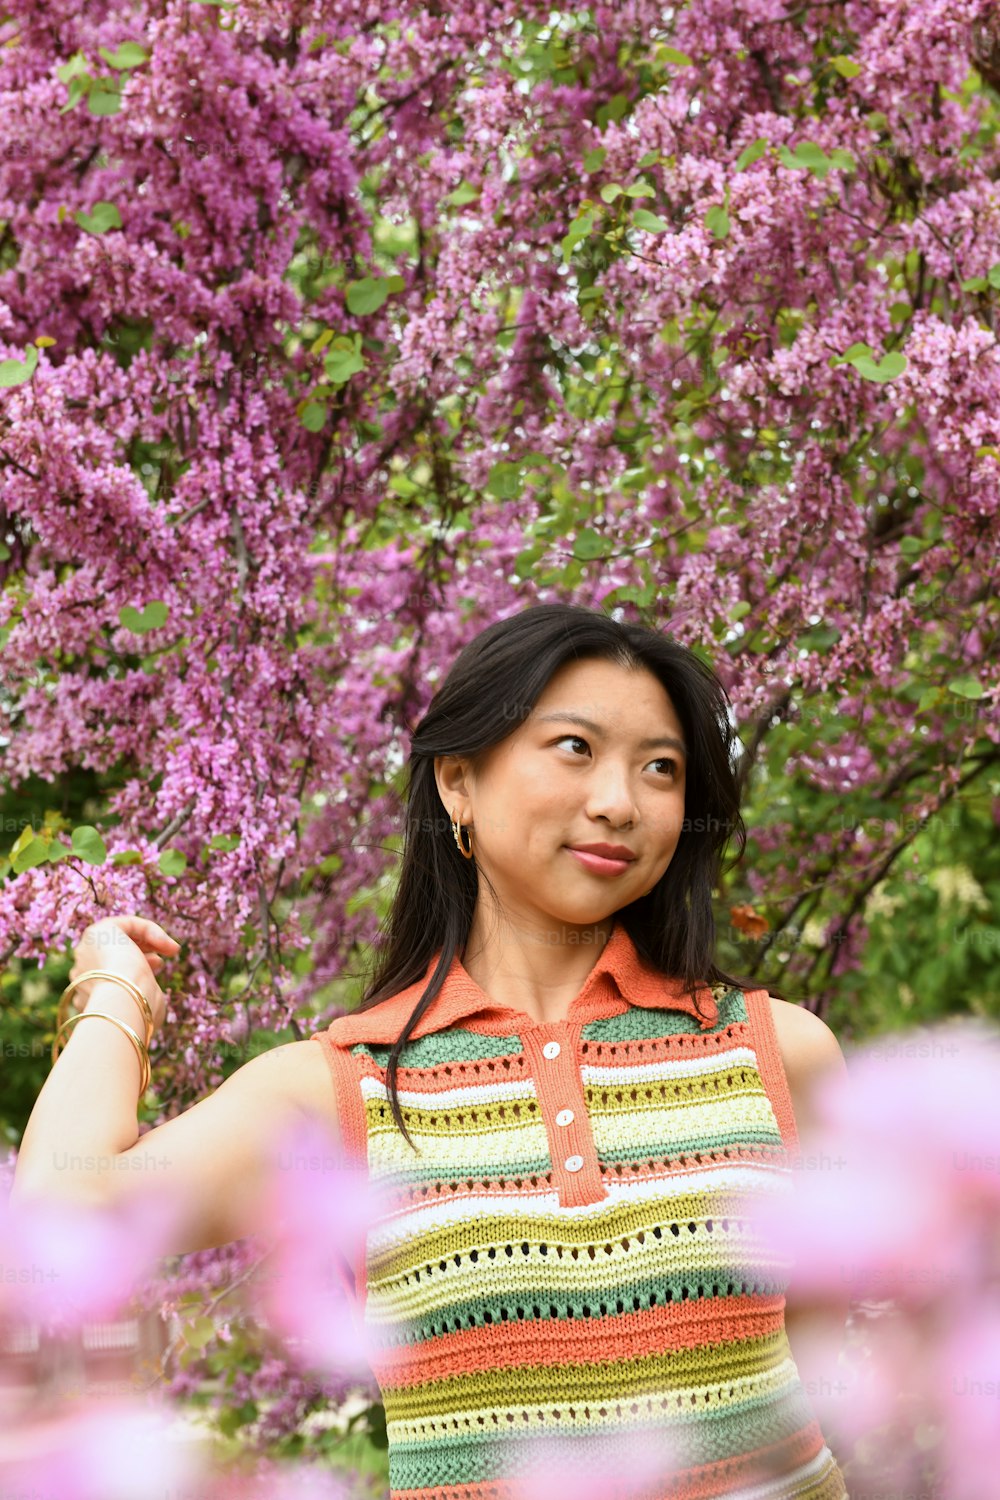 Una mujer parada frente a un árbol con flores púrpuras